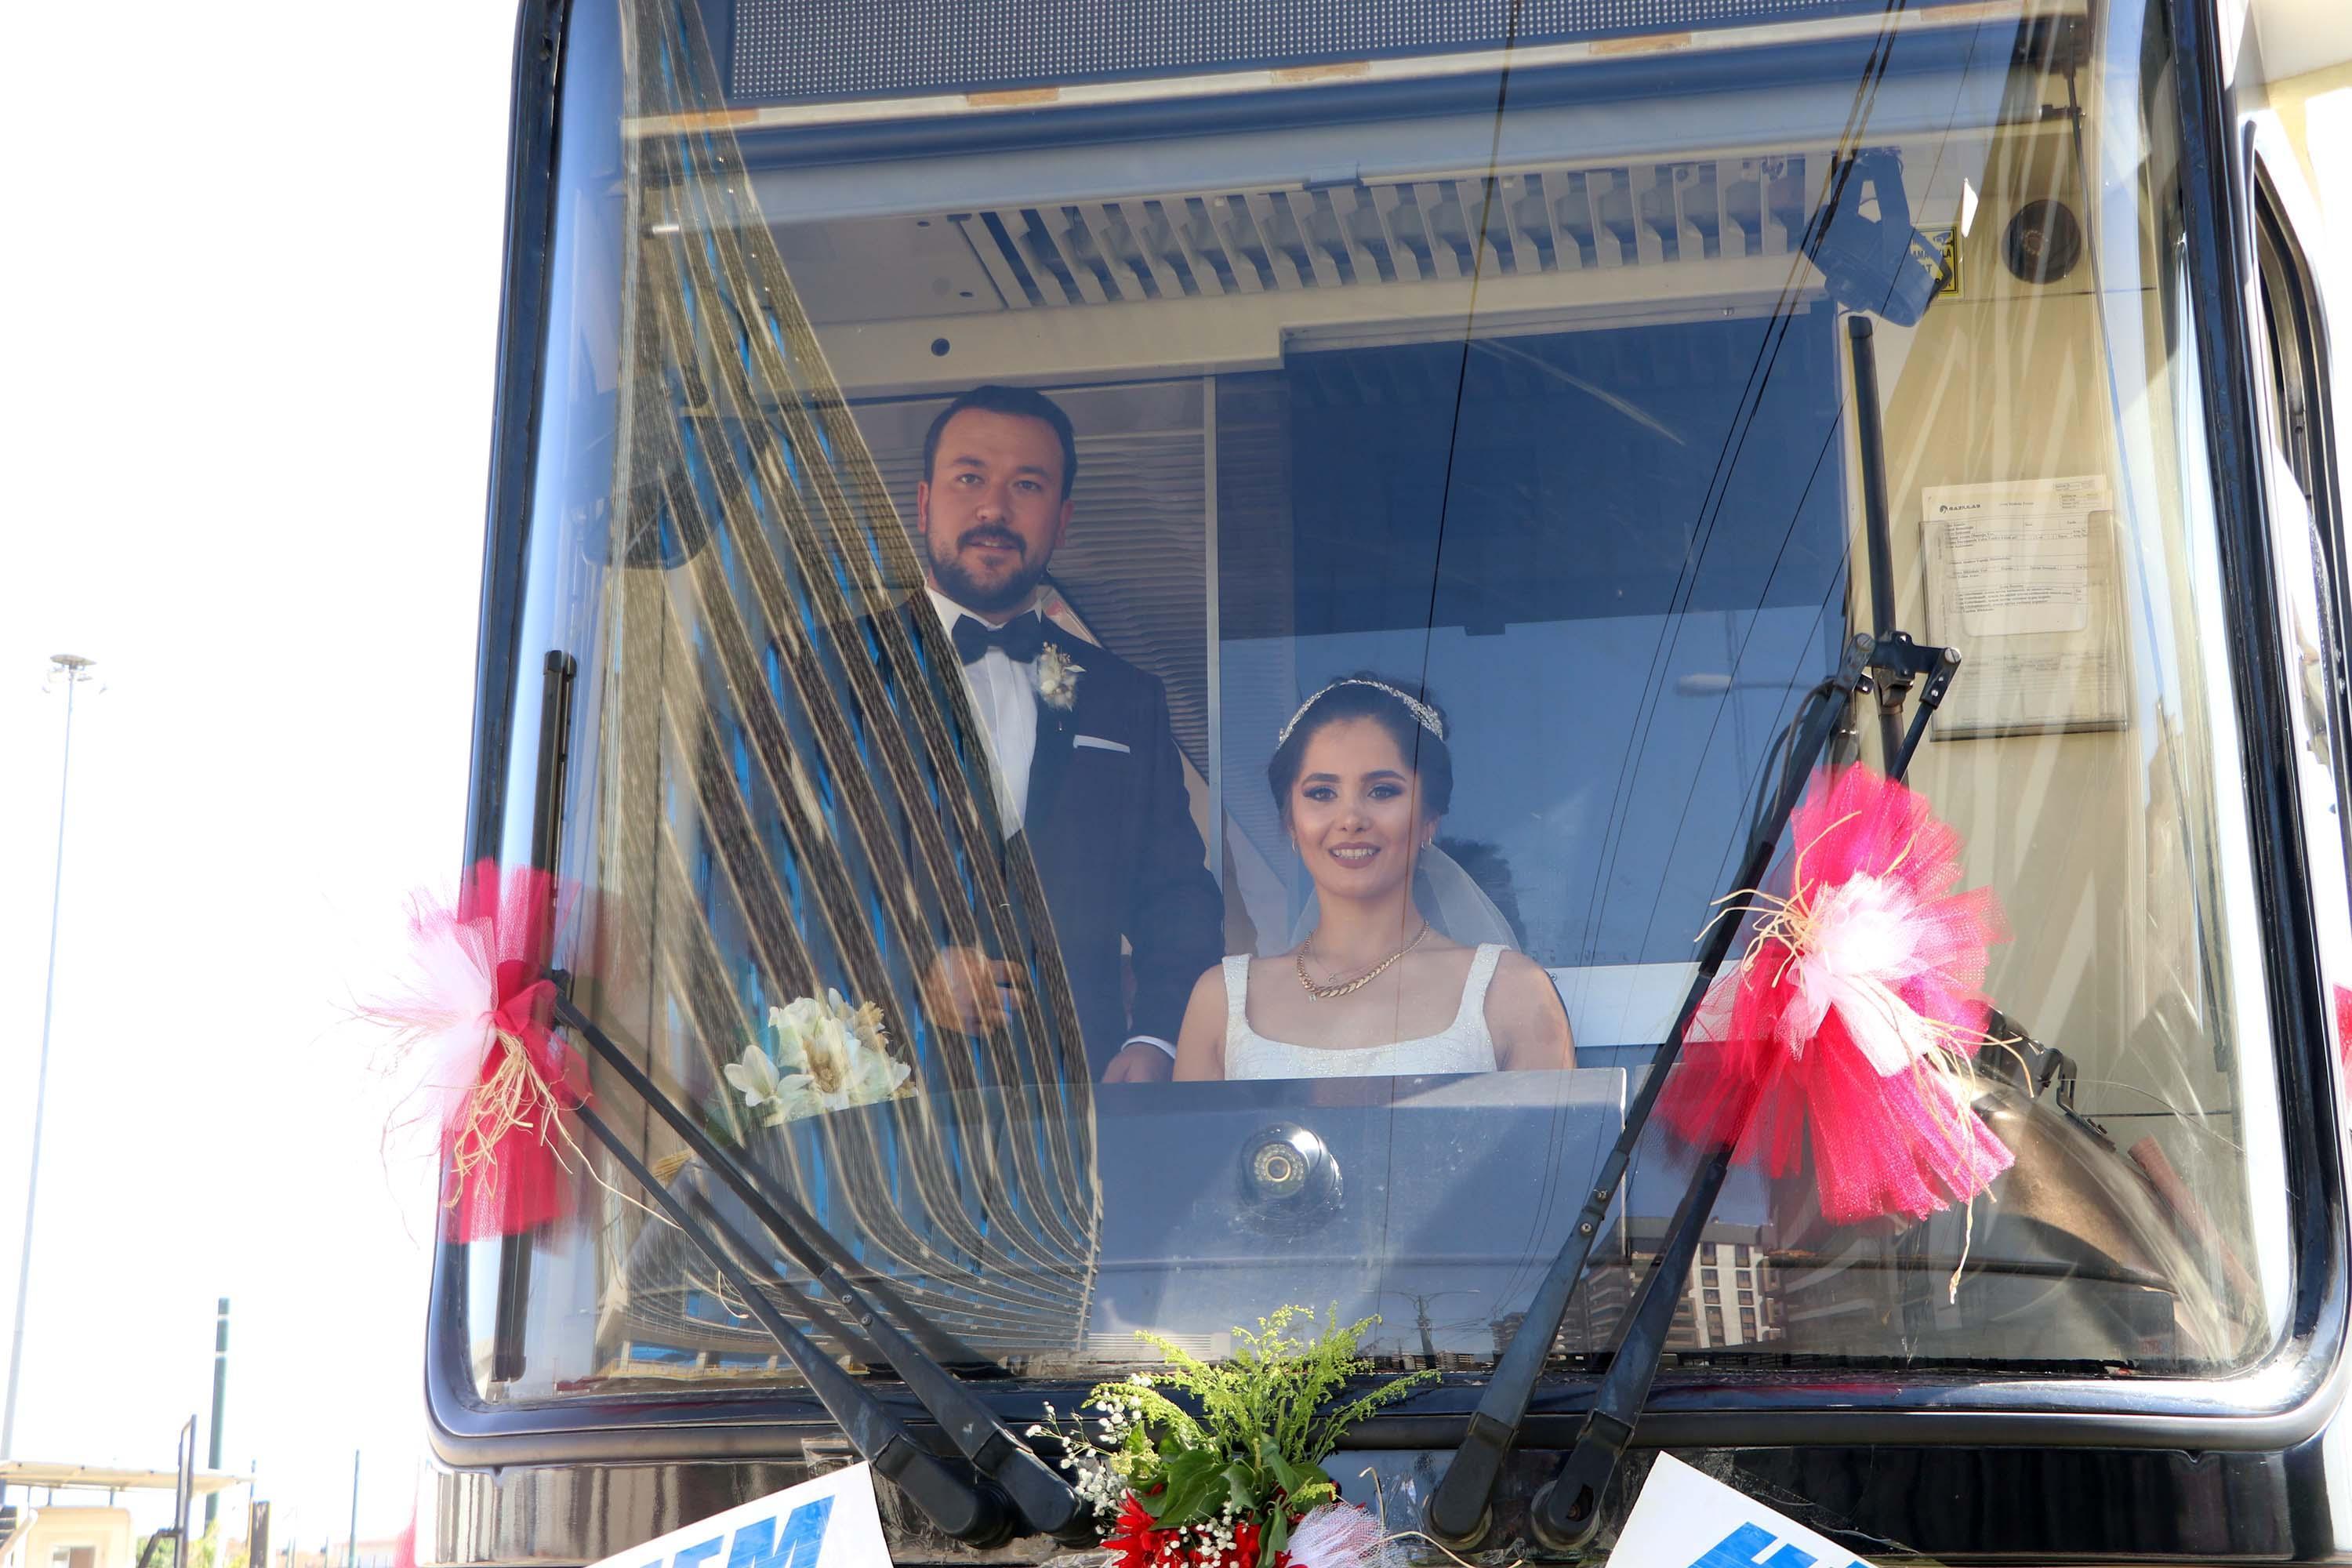 Vatman çift, düğün öncesi süsledikleri tramvayla şehir turu attı